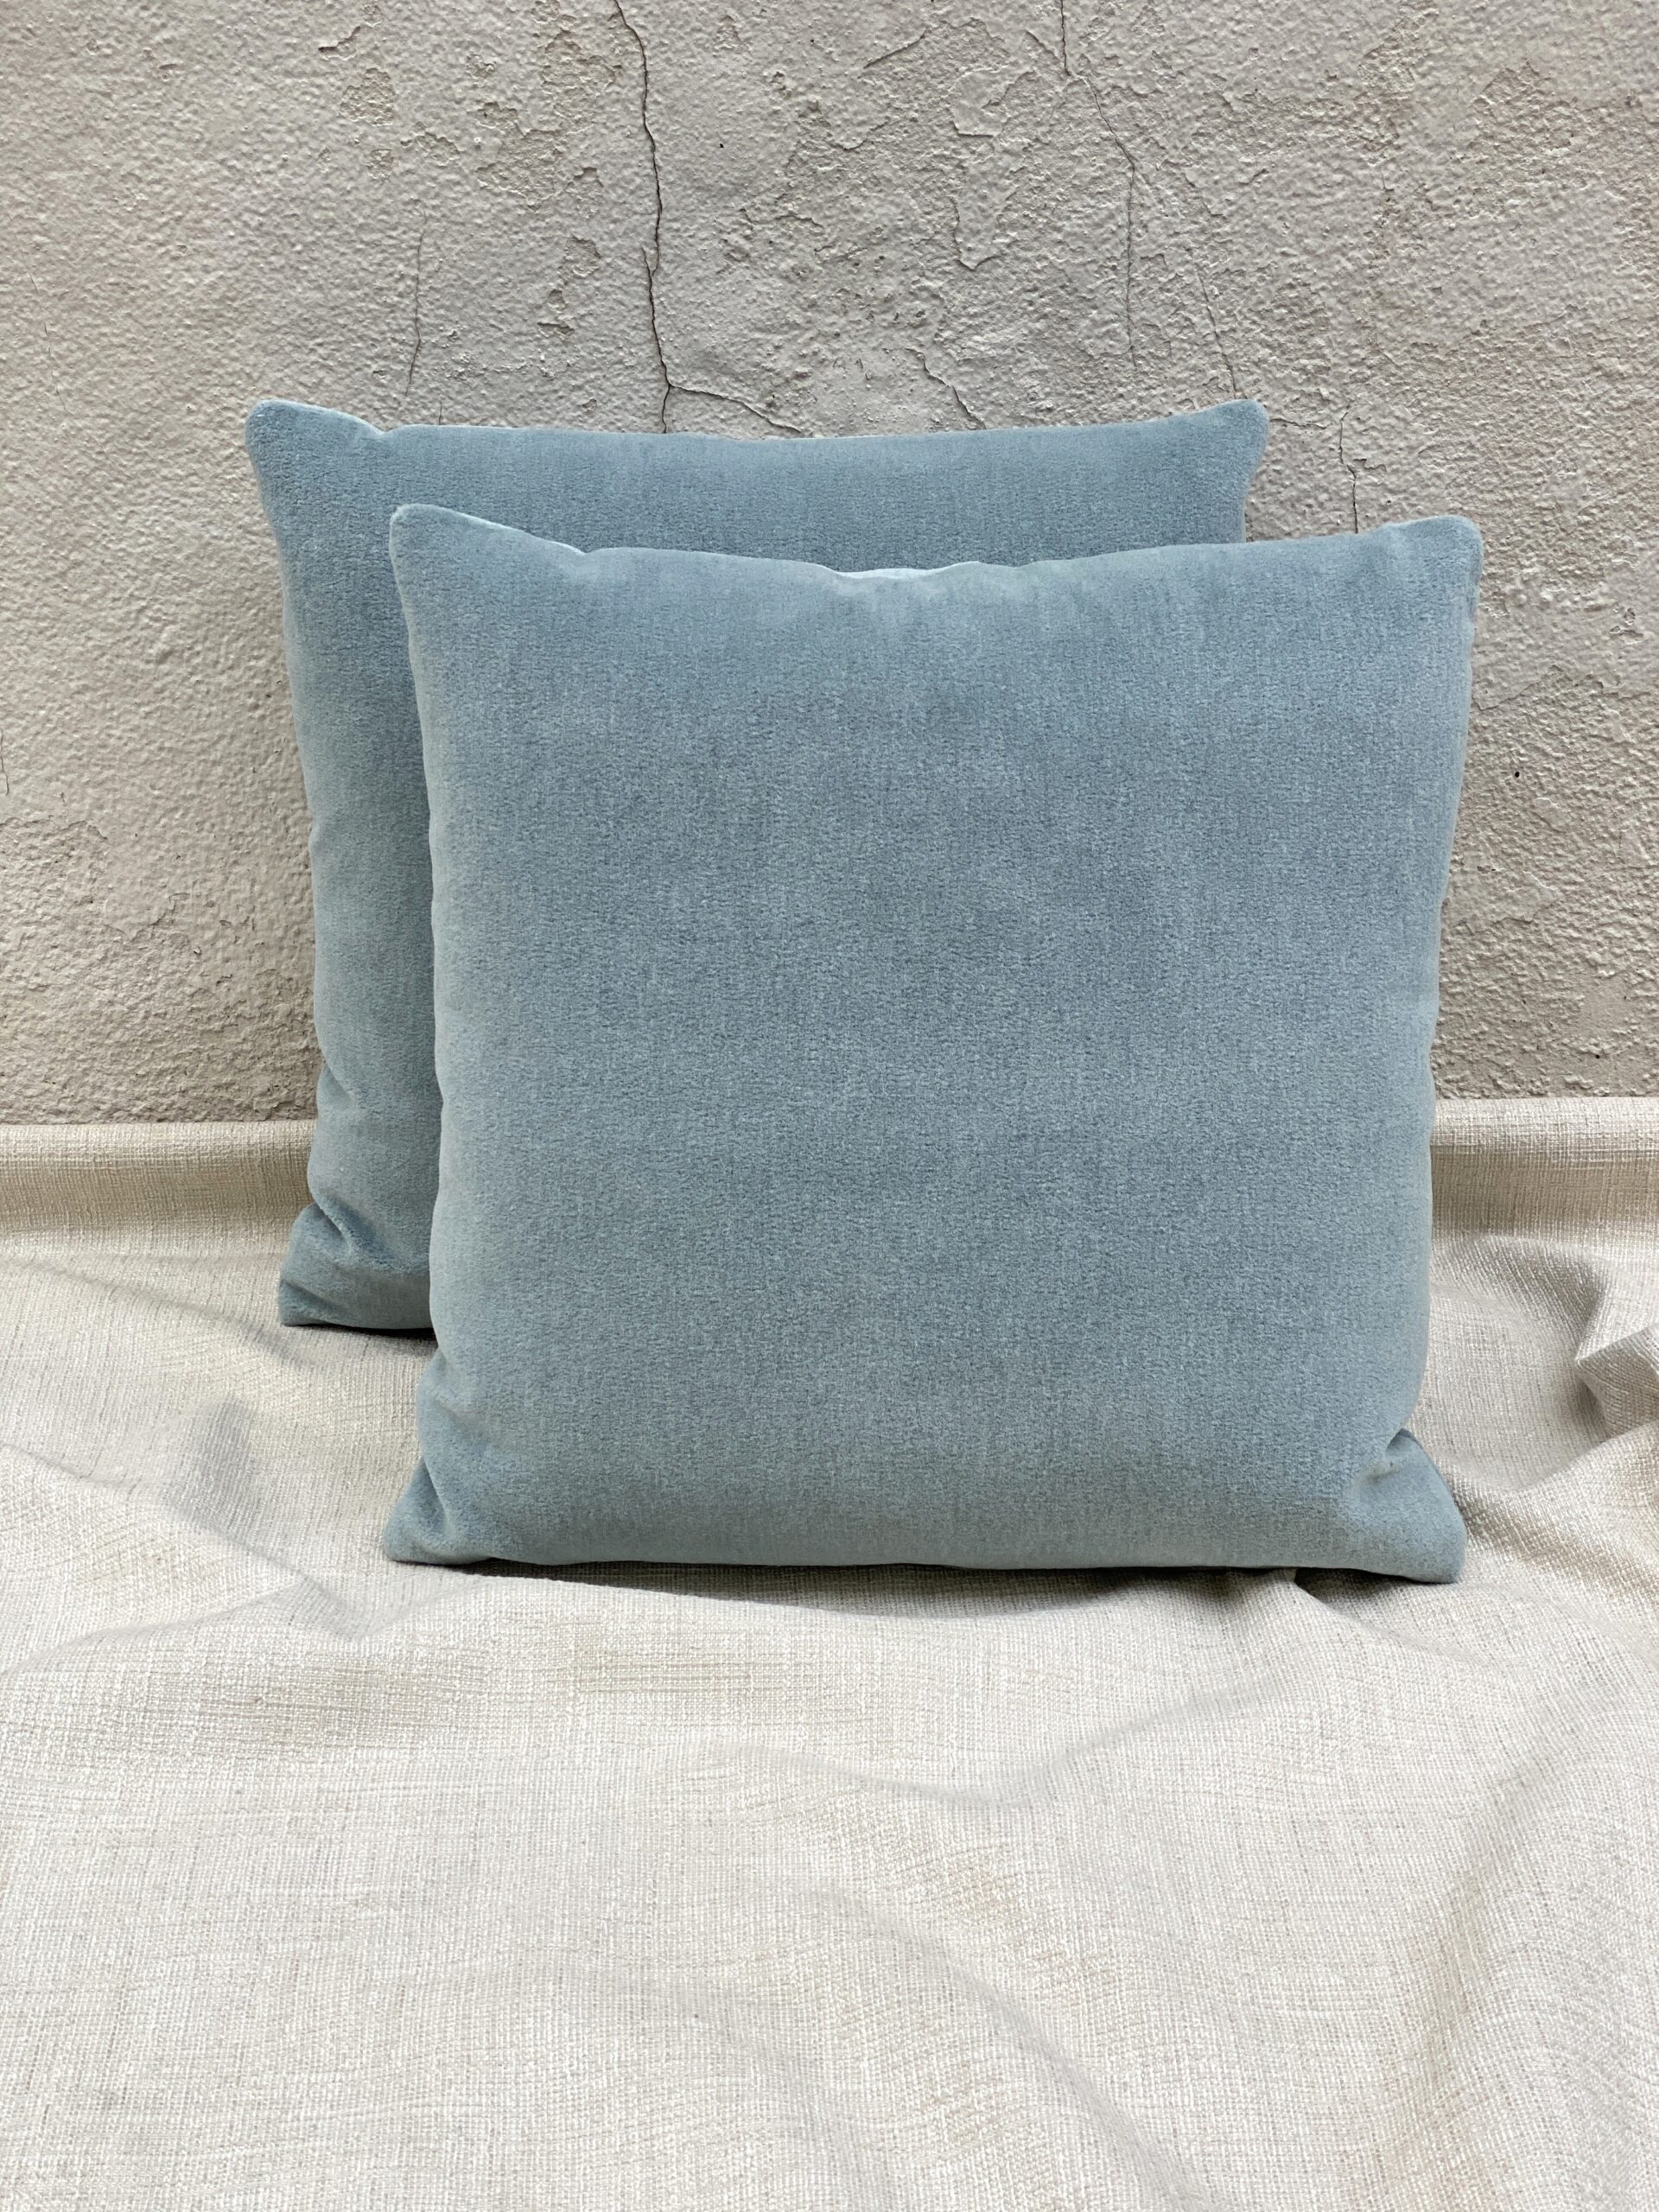 Mokum Alpaca Velvet Pillows